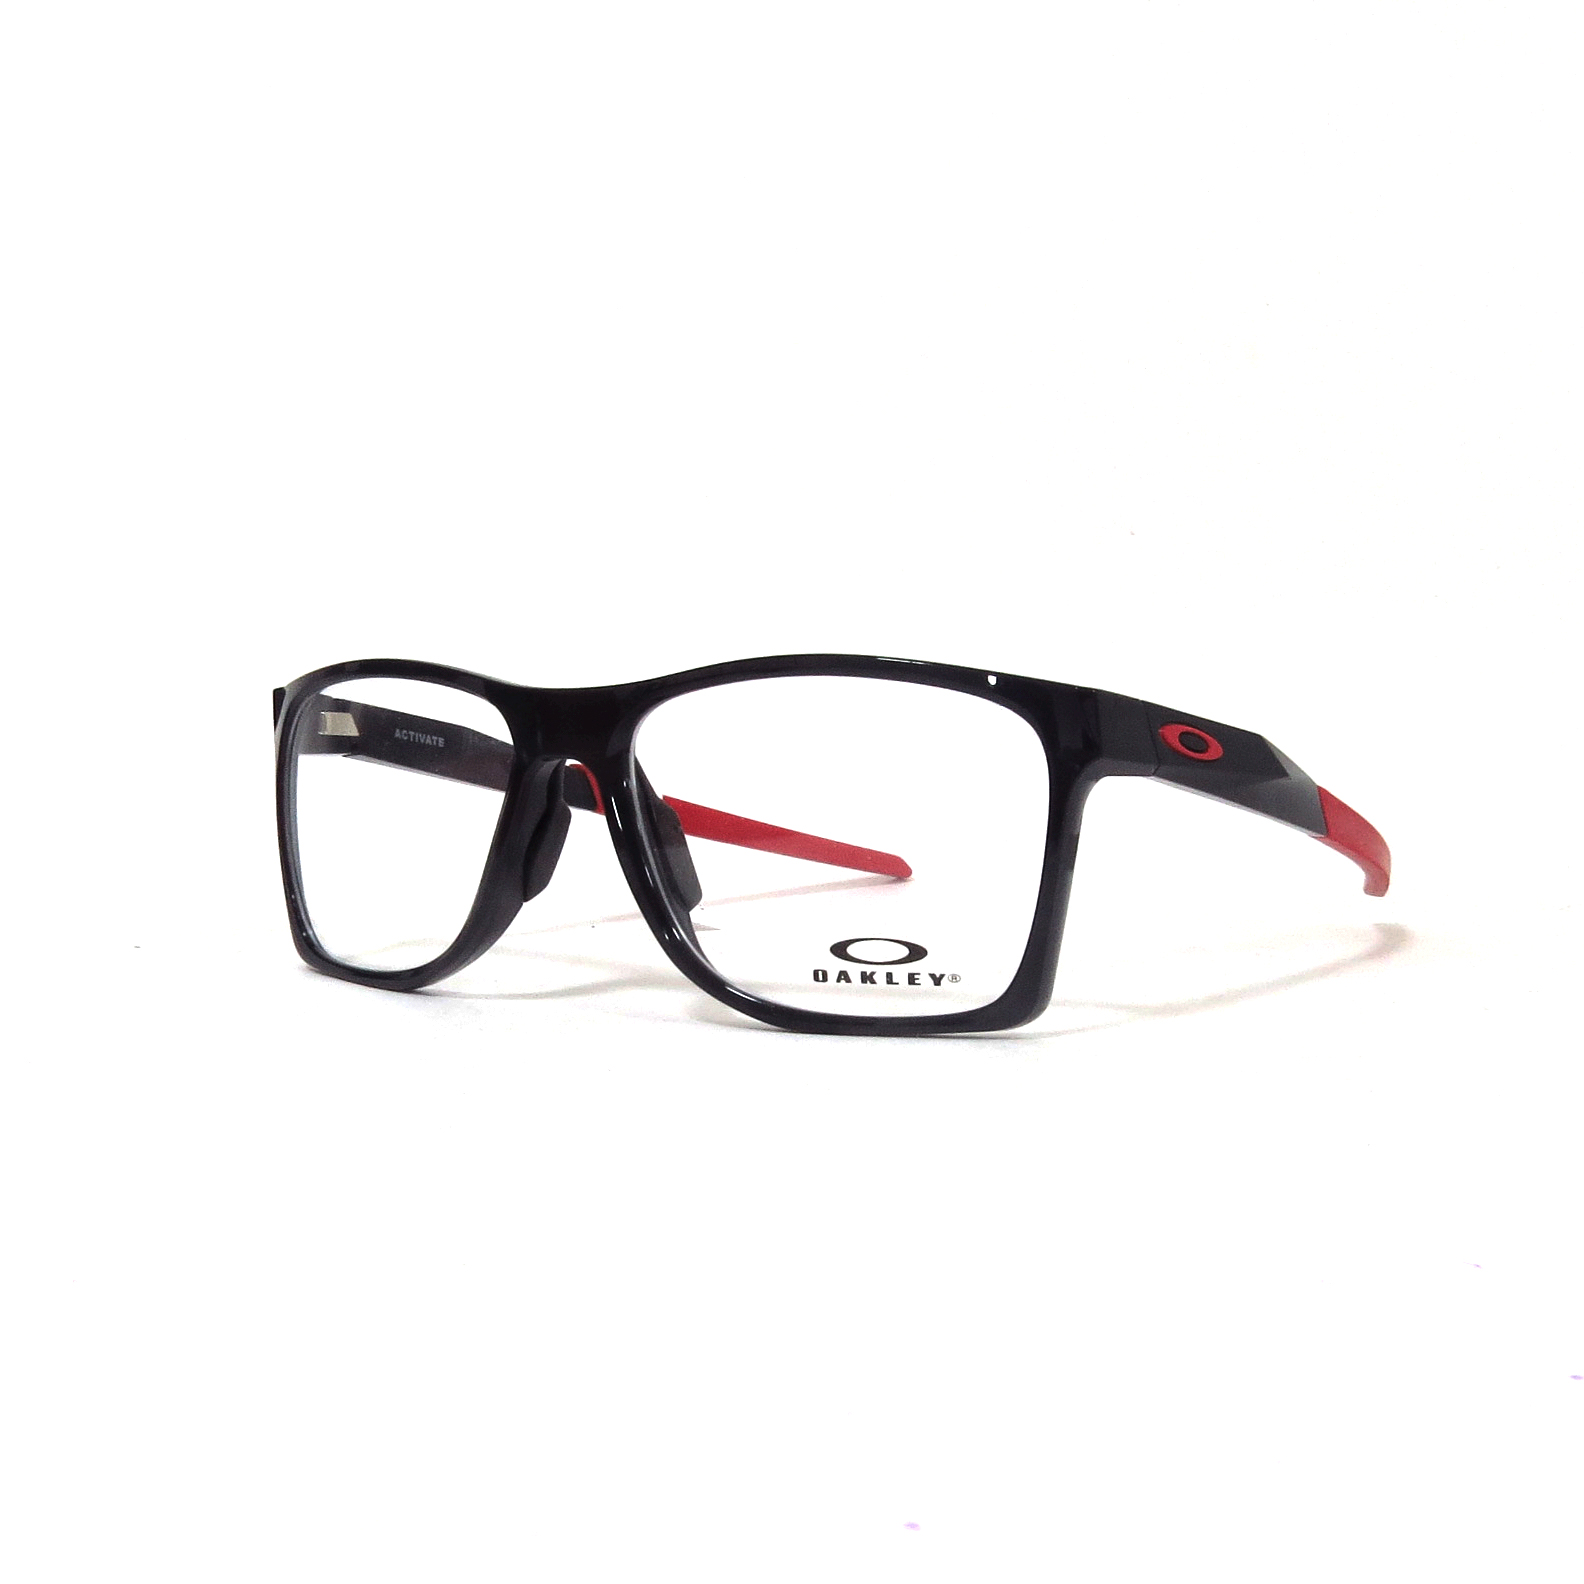 las gafas | OAKLEY - 8173 - Óptica las gafas